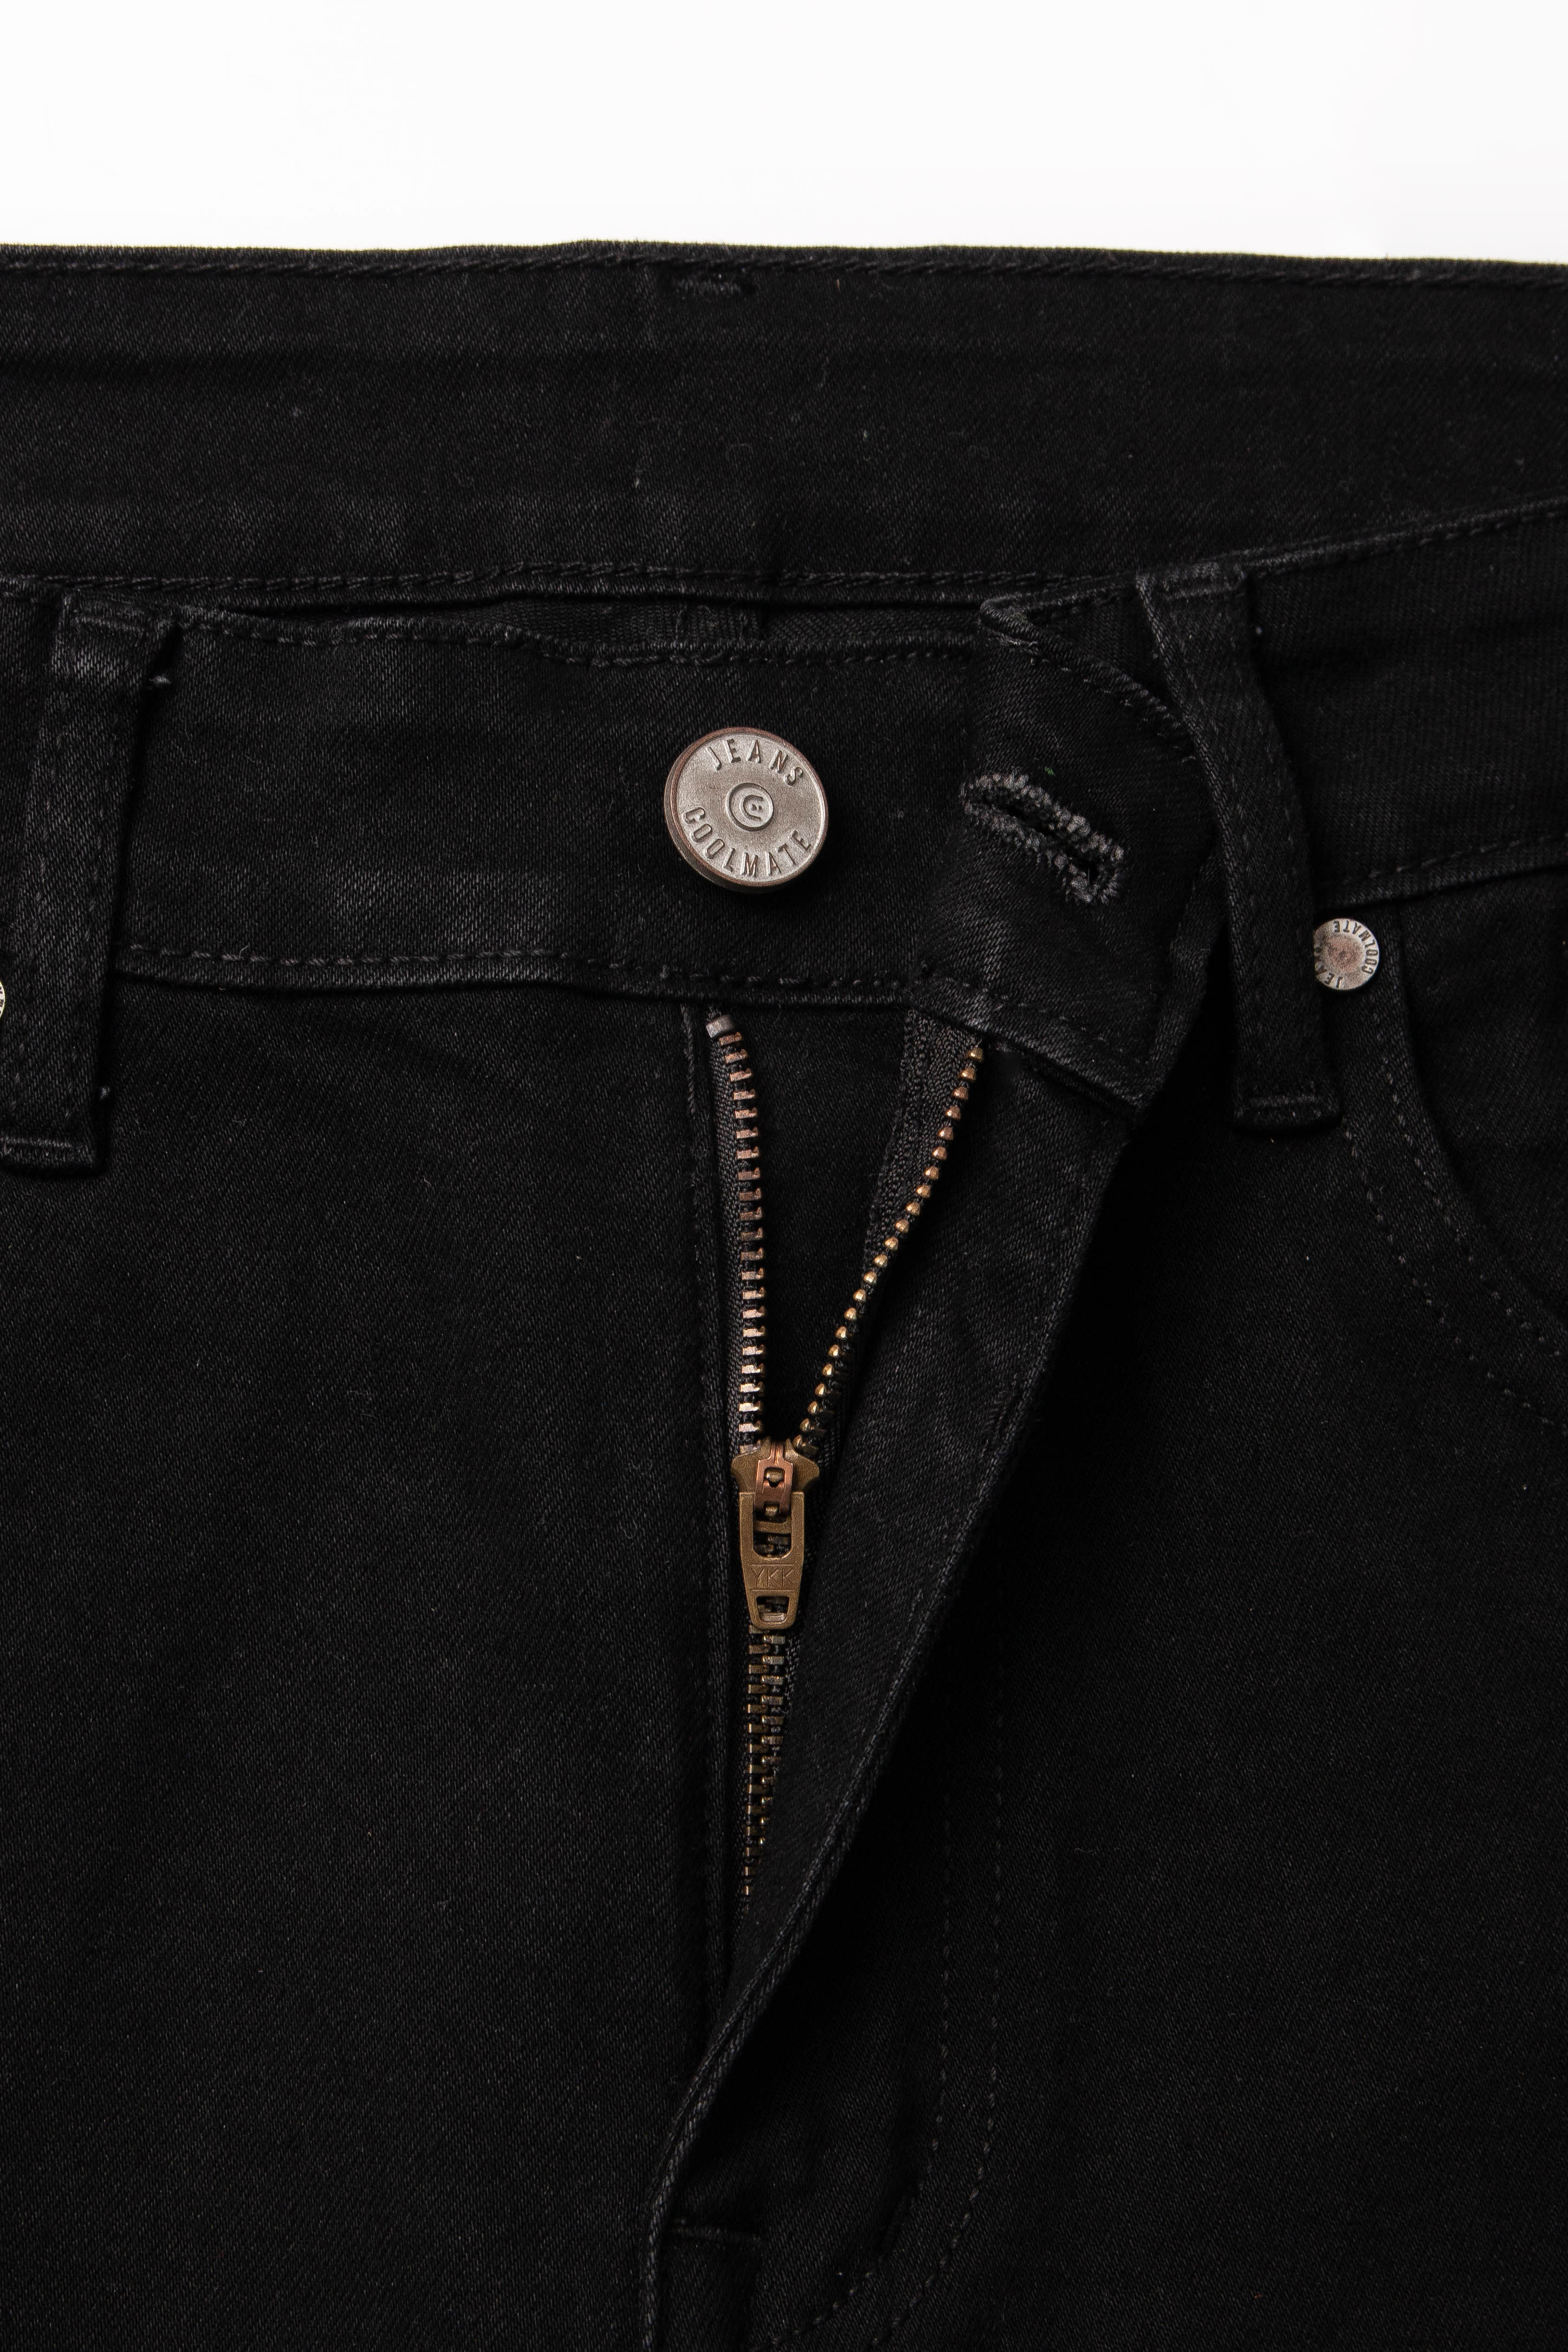 OUTLET - Quần Jeans Basic Slim V2 Đen 5